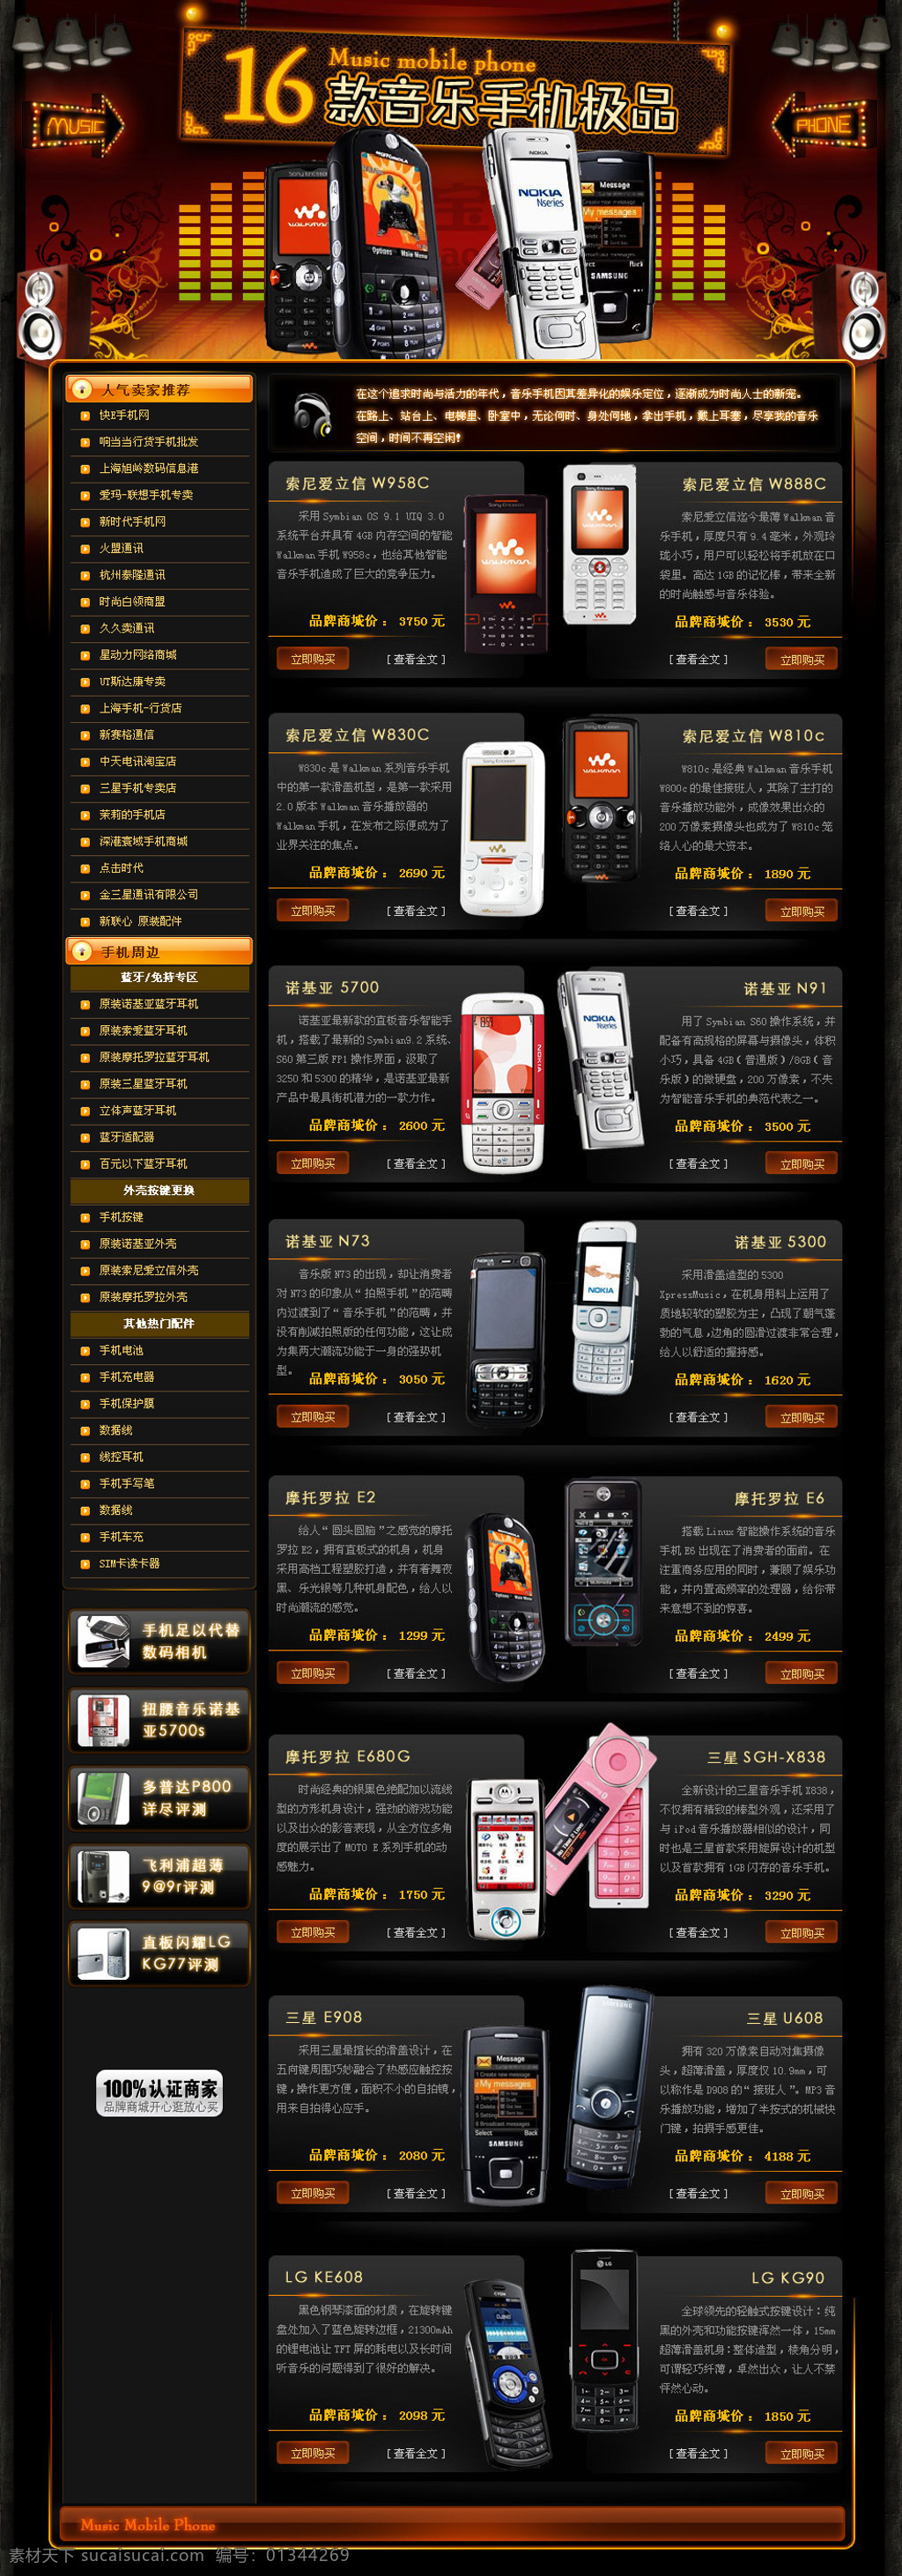 韩国 手机 购物网站 页面 国外网页设计 韩国网页模板 韩国网页设计 韩国购物网站 网页 活动 海报 网站活动页面 其他海报设计